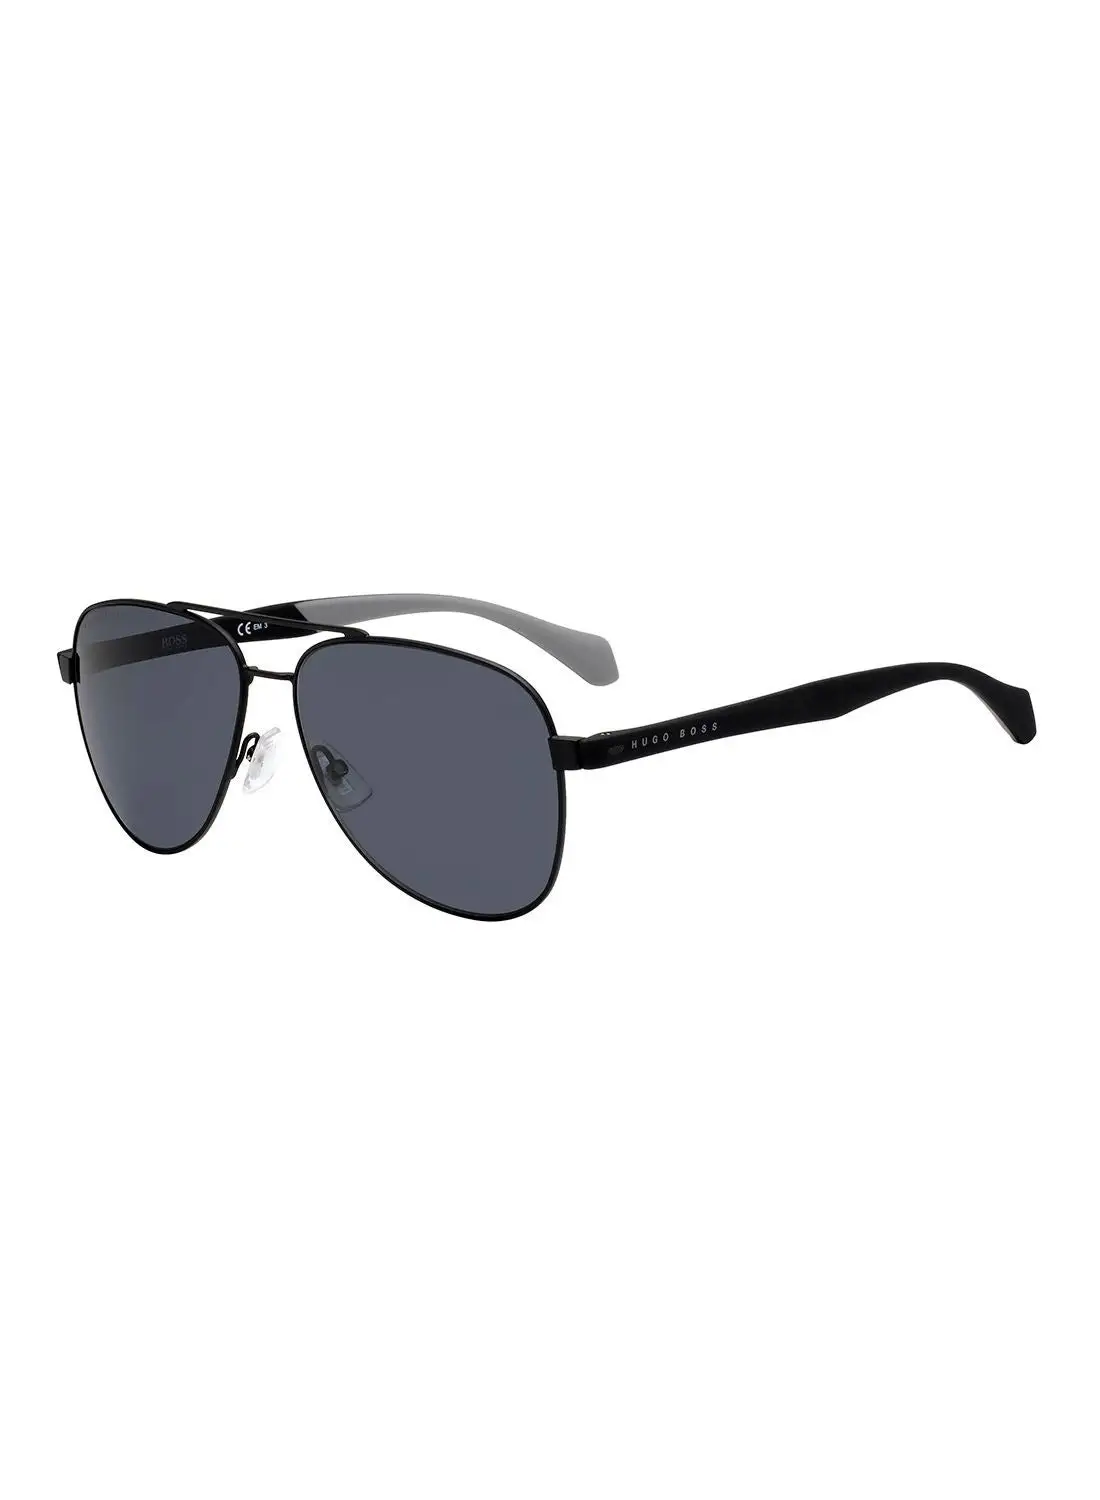 HUGO BOSS نظارة شمسية بايلوت للحماية من الأشعة فوق البنفسجية للرجال - Boss 1077/S Mtt Black 60 - مقاس العدسة: 60 ملم